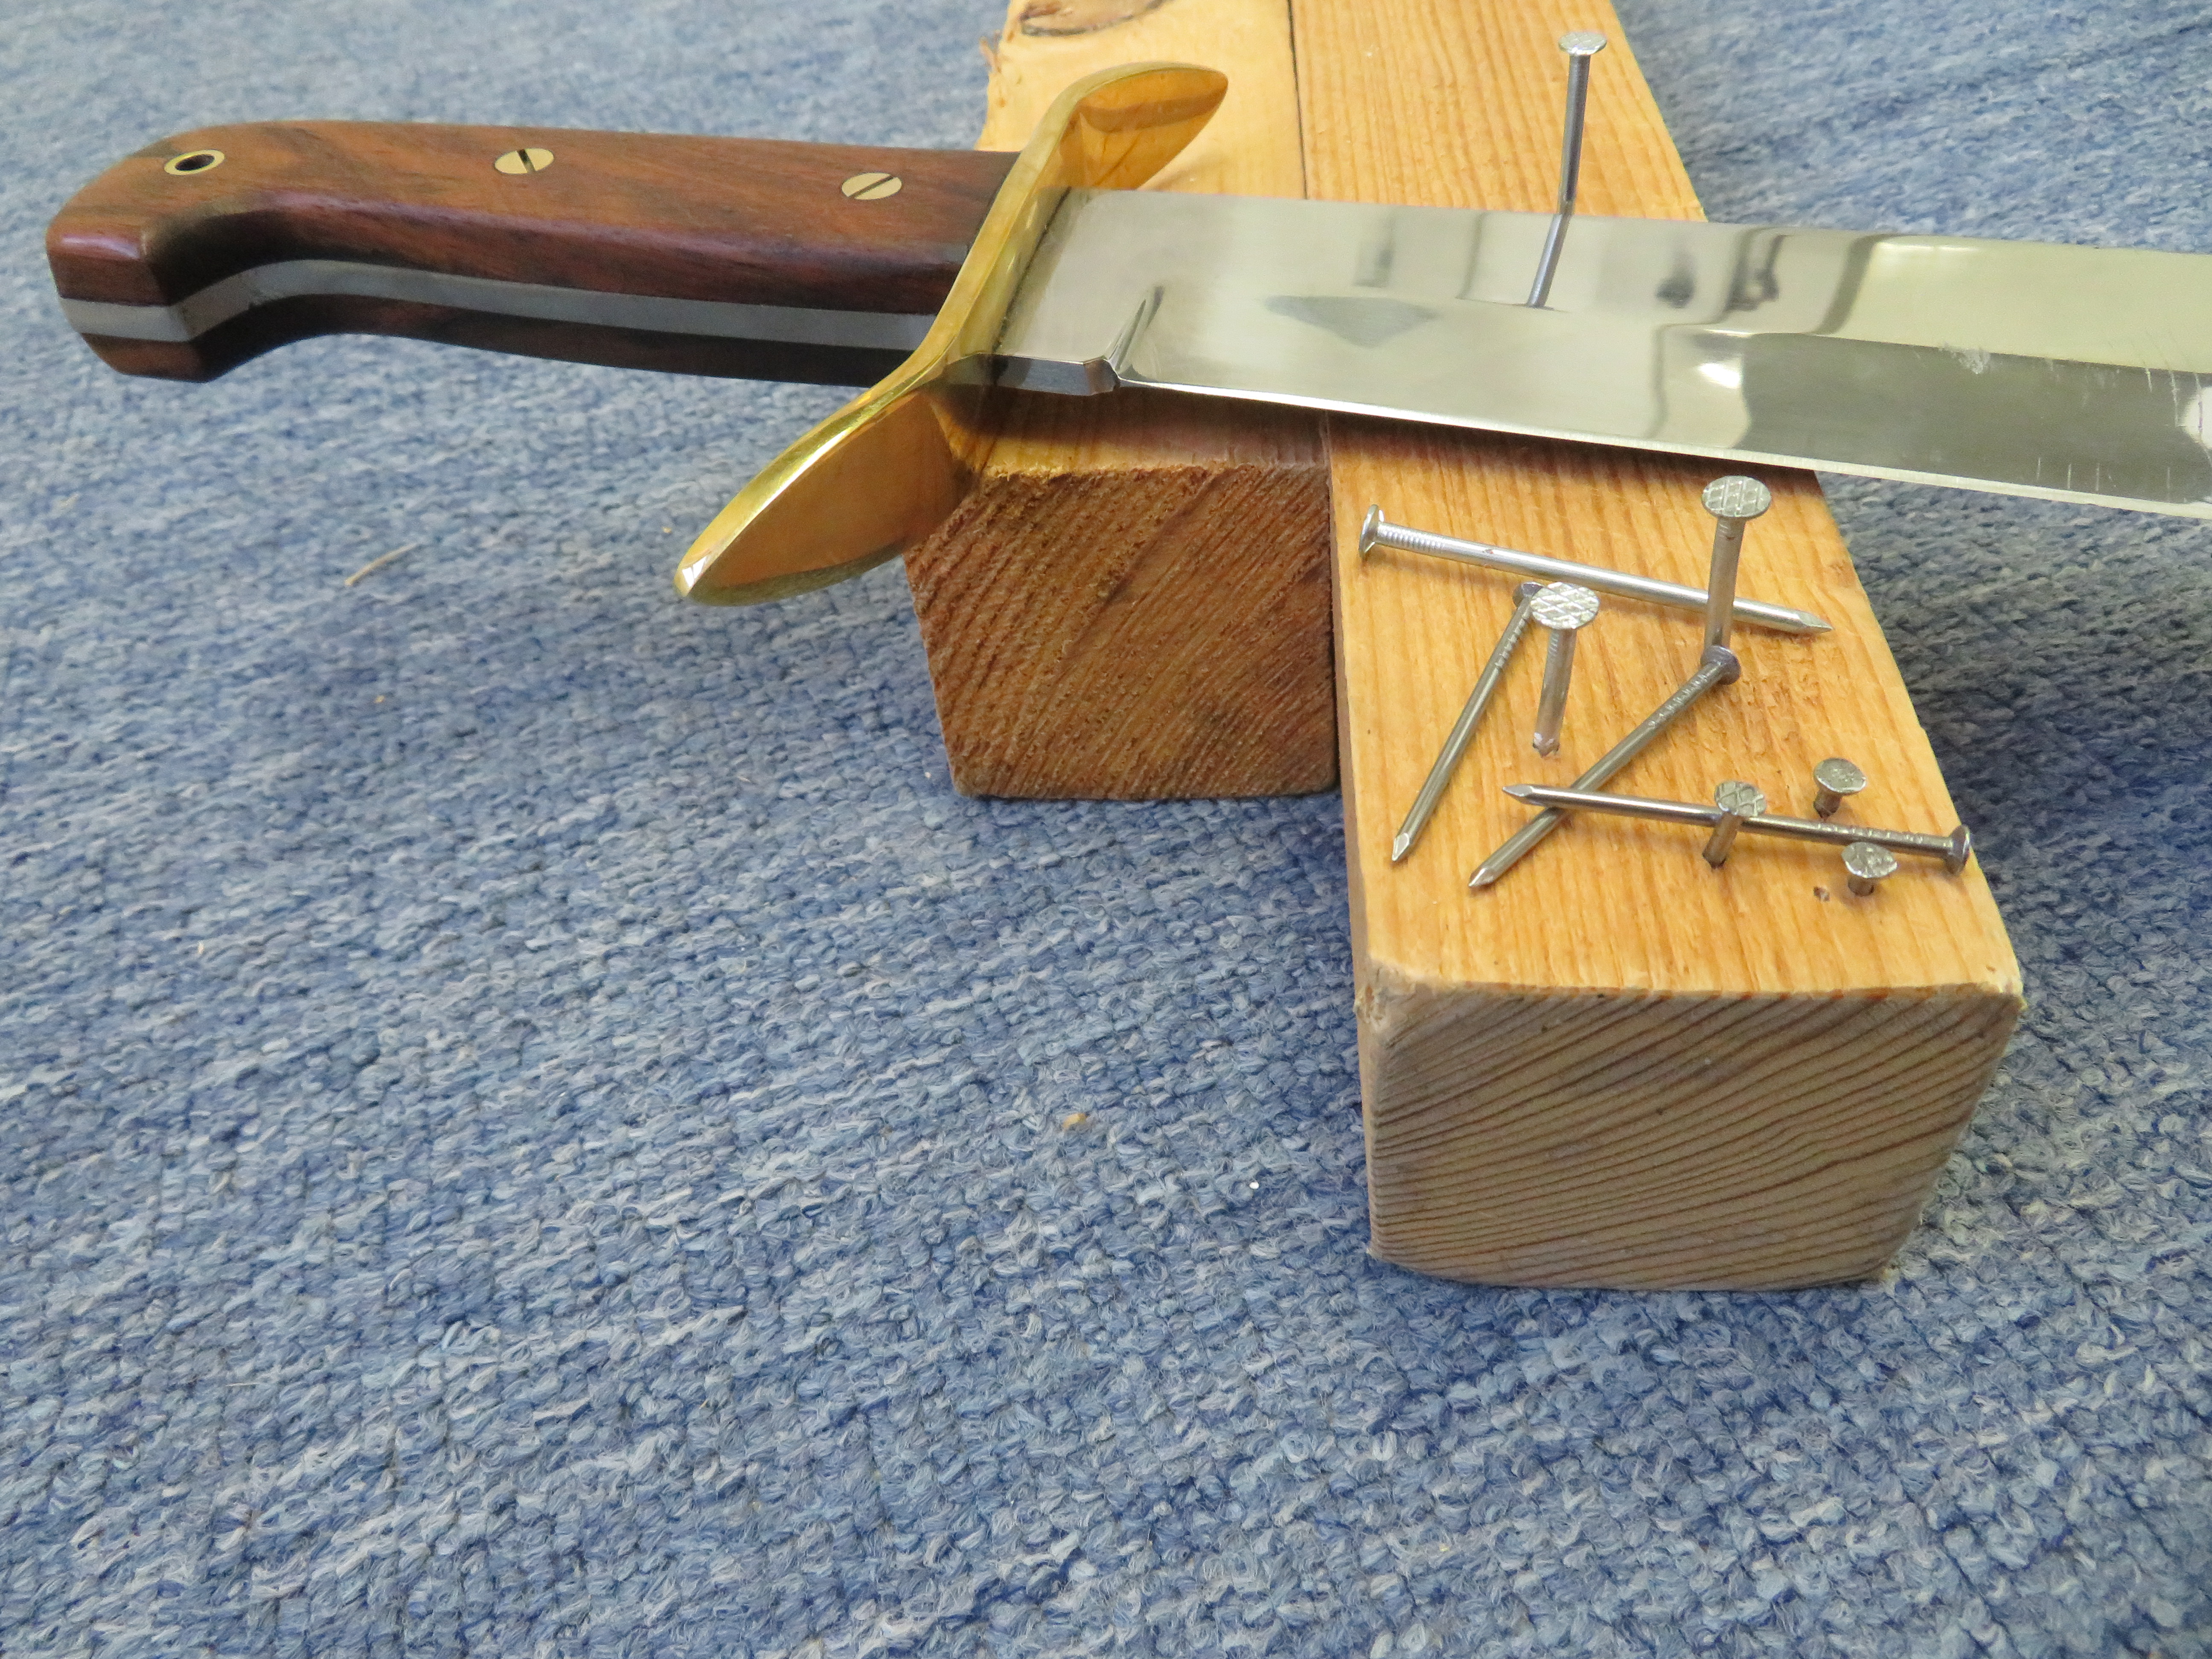 Rozhodl jsem se také plochou částí čepele Nože Wild West Bowie improvizovaně zatlouct několik různých hřebíků do dřevěného trámku.